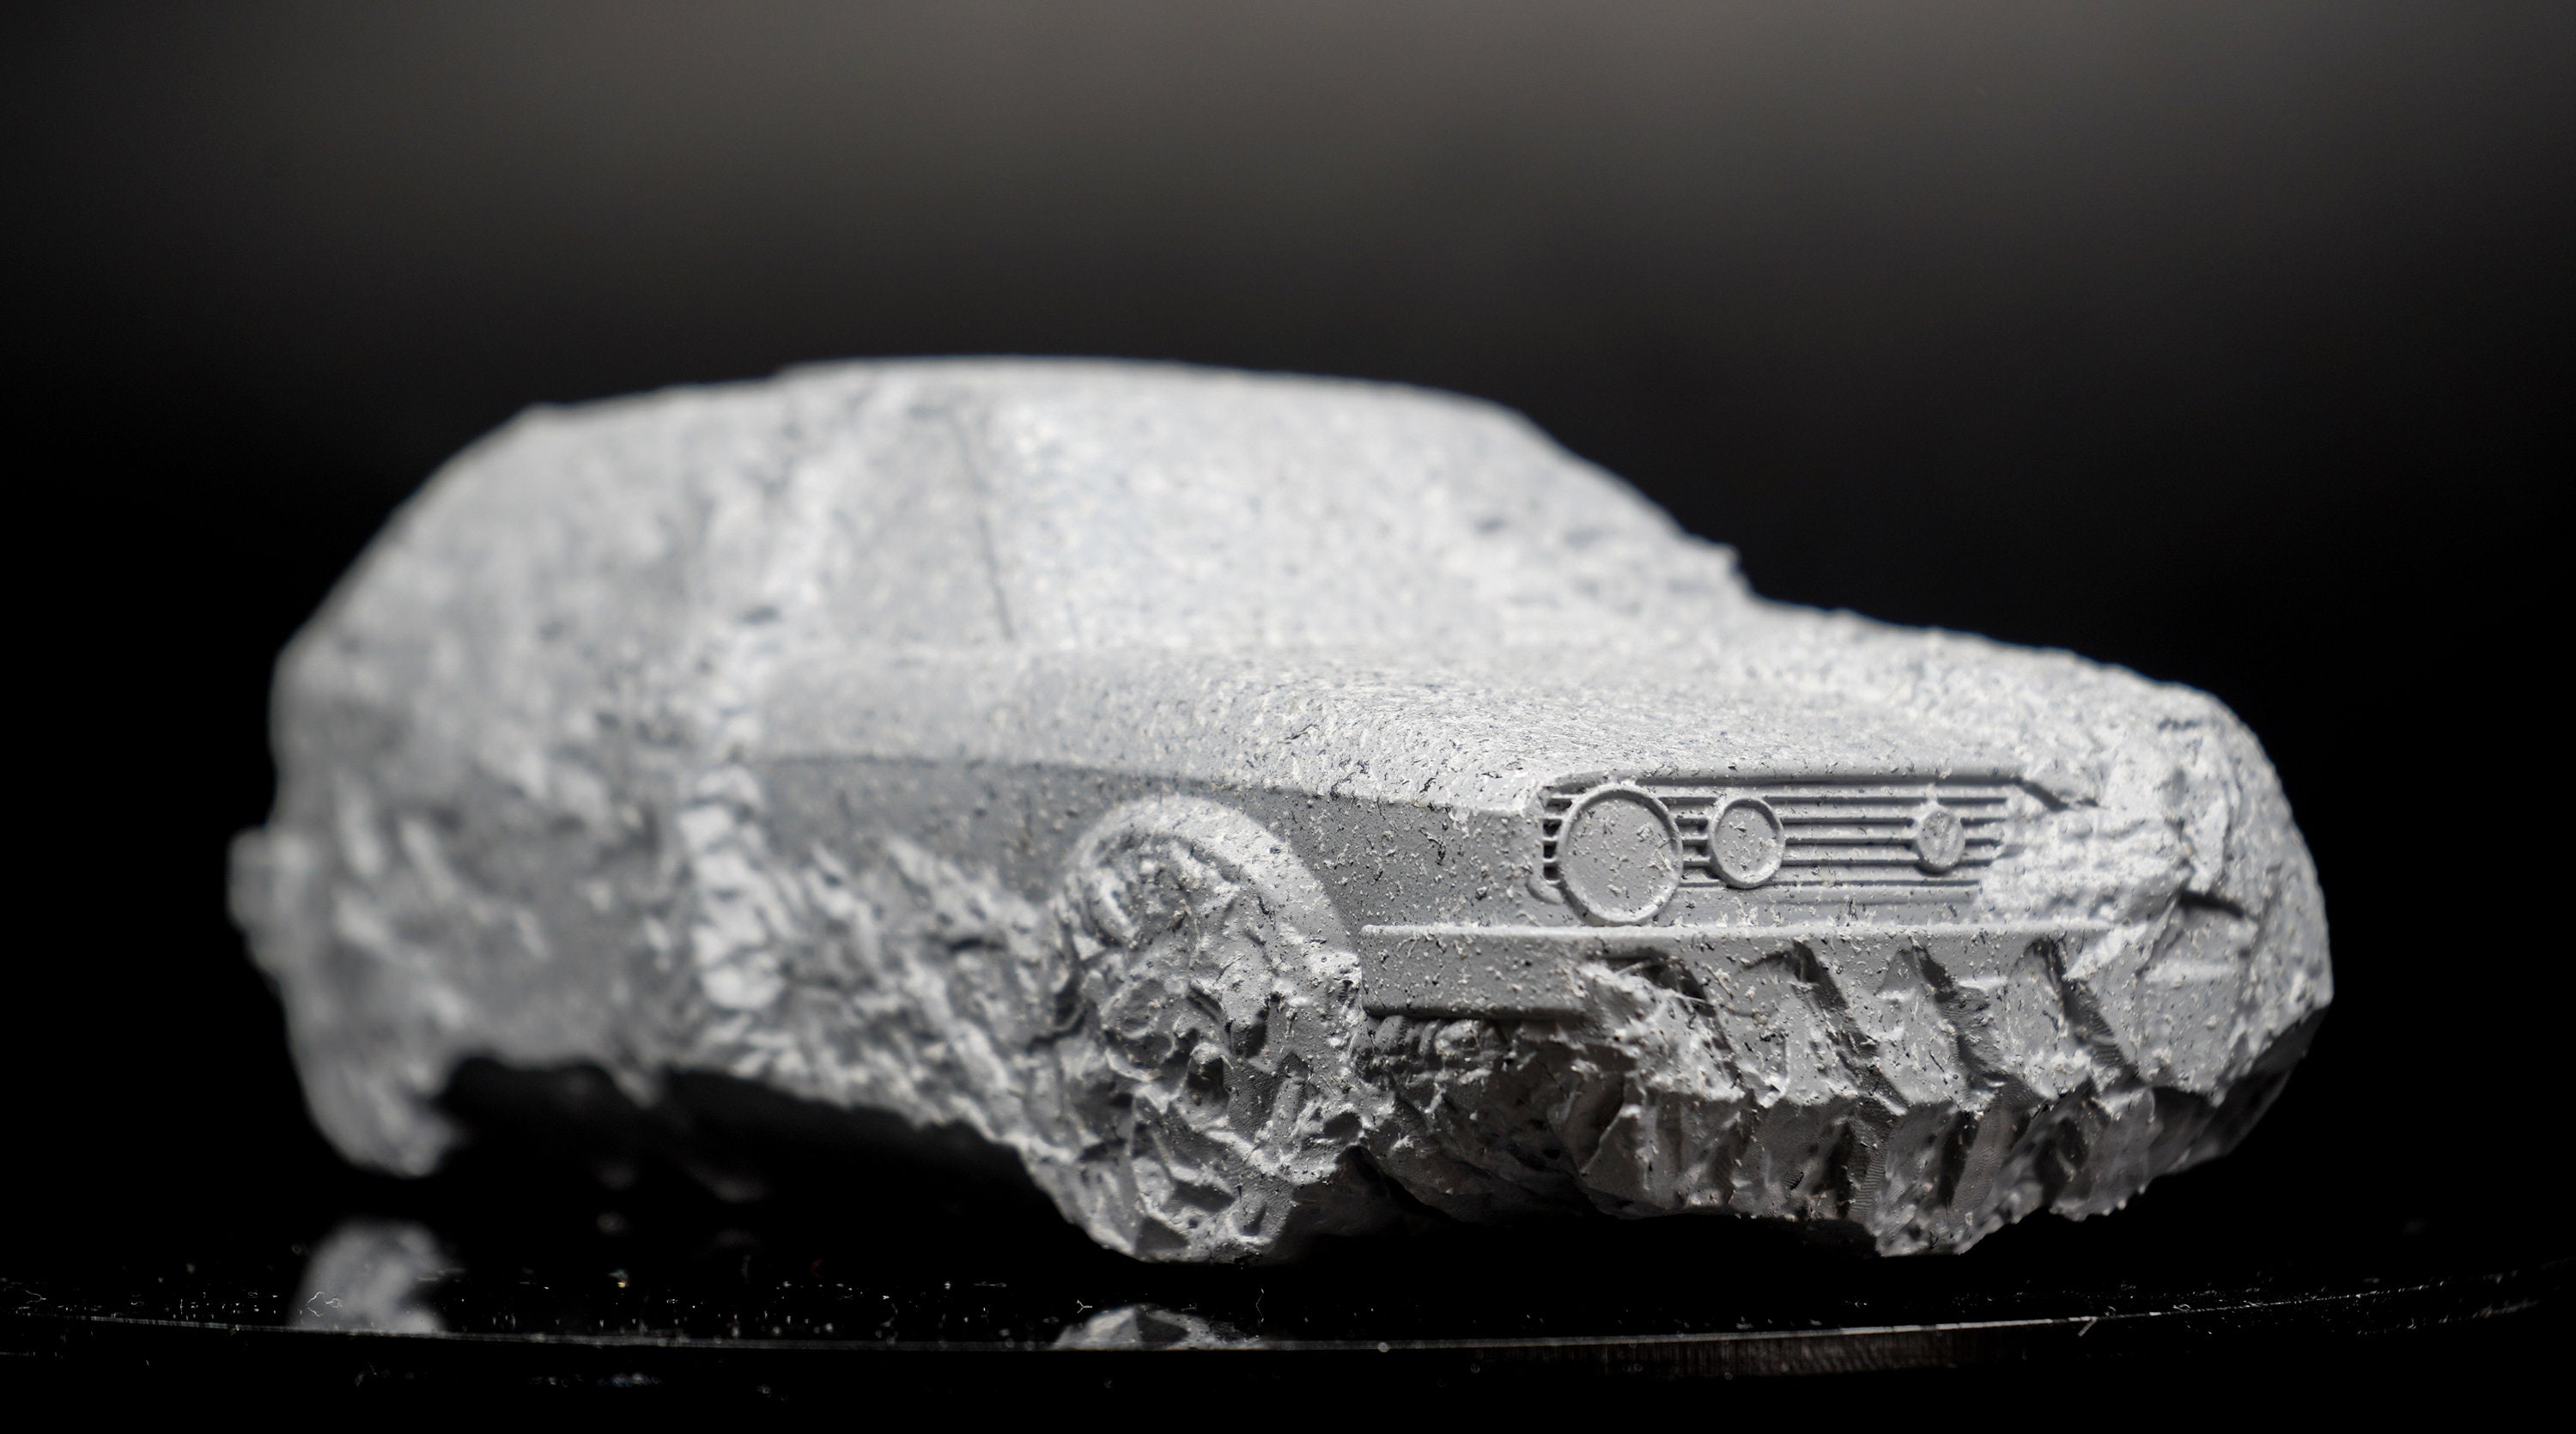 PRINTONIA Leinwand-bild Aluminiumrahmen 140x100cm Audi R8 Art Bilder  Dekoration Wandbild Kunstdruck Sportwagen Automobil Deko